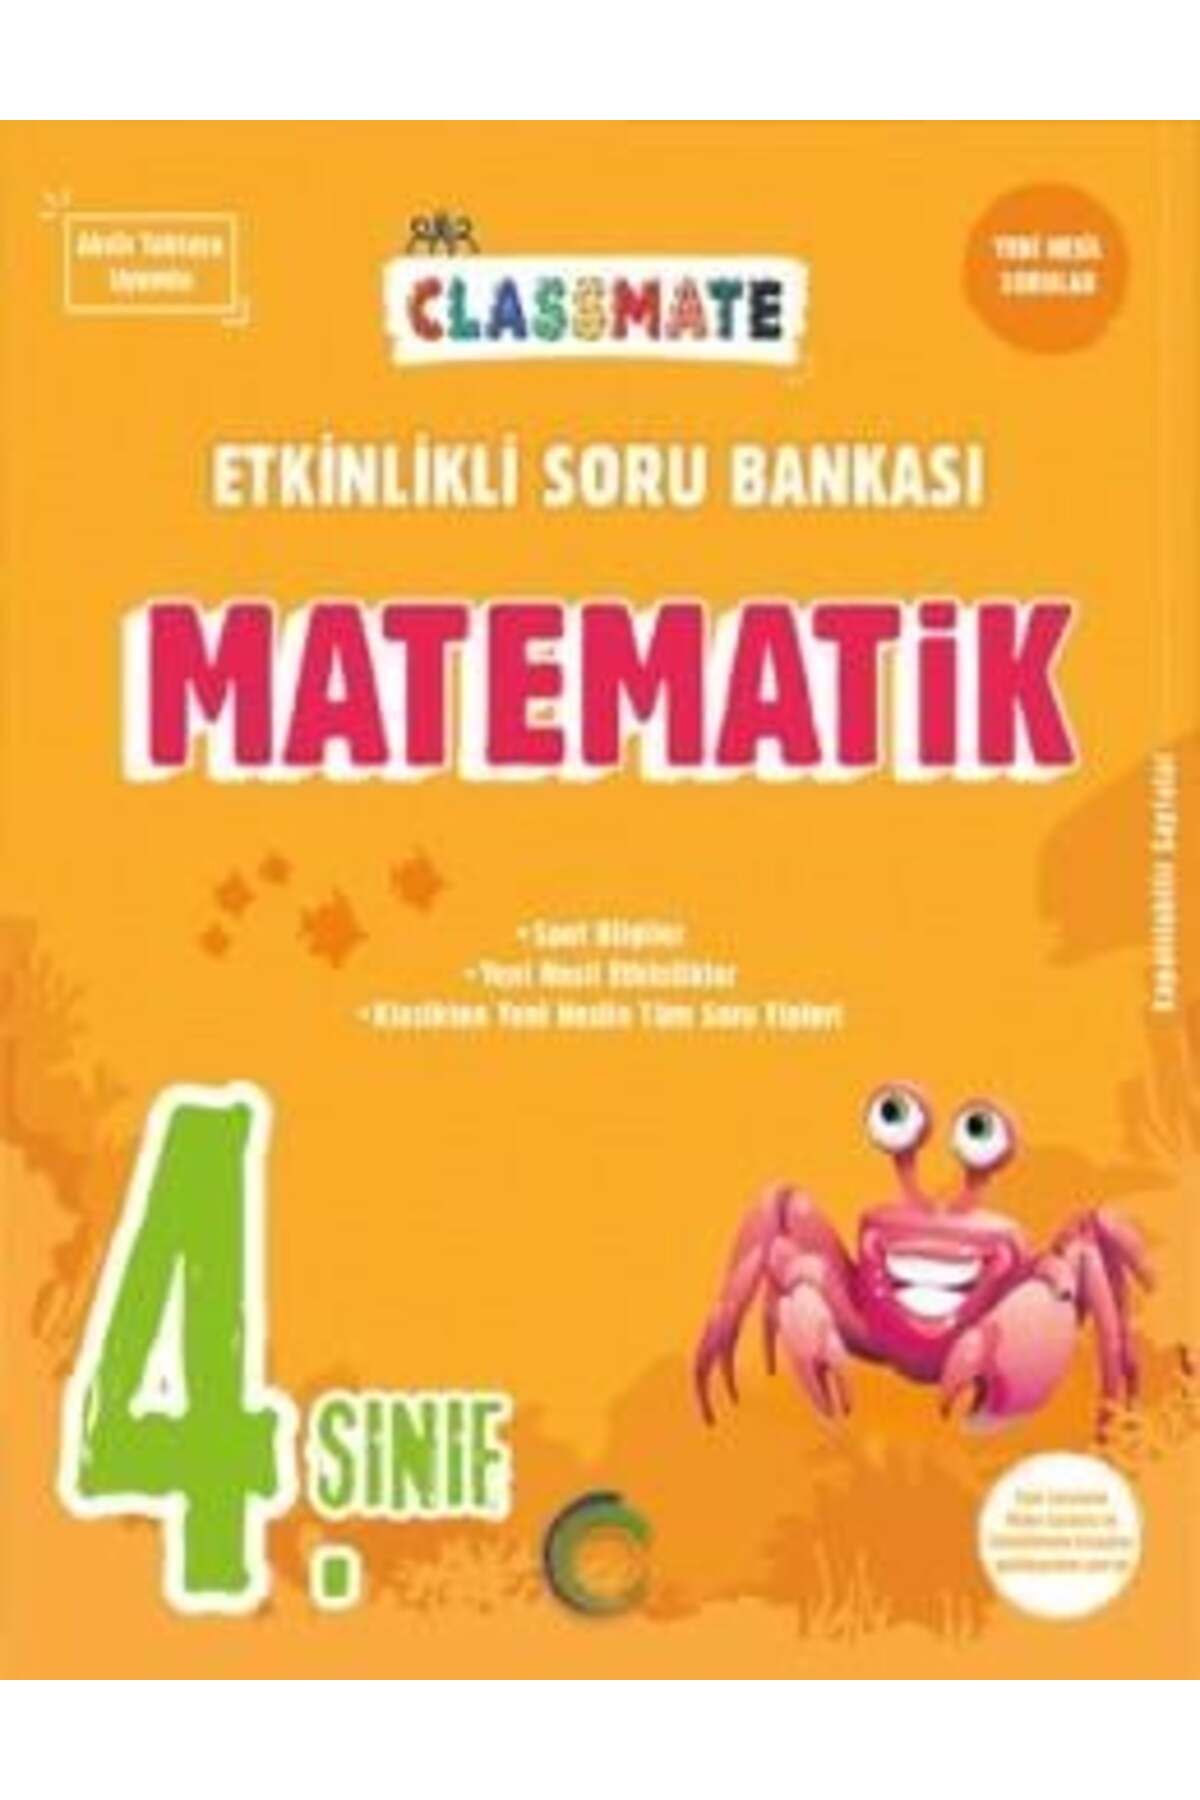 Okyanus Yayınları 4. Sınıf Classmate Matematik Etkinlikli Soru Bankası